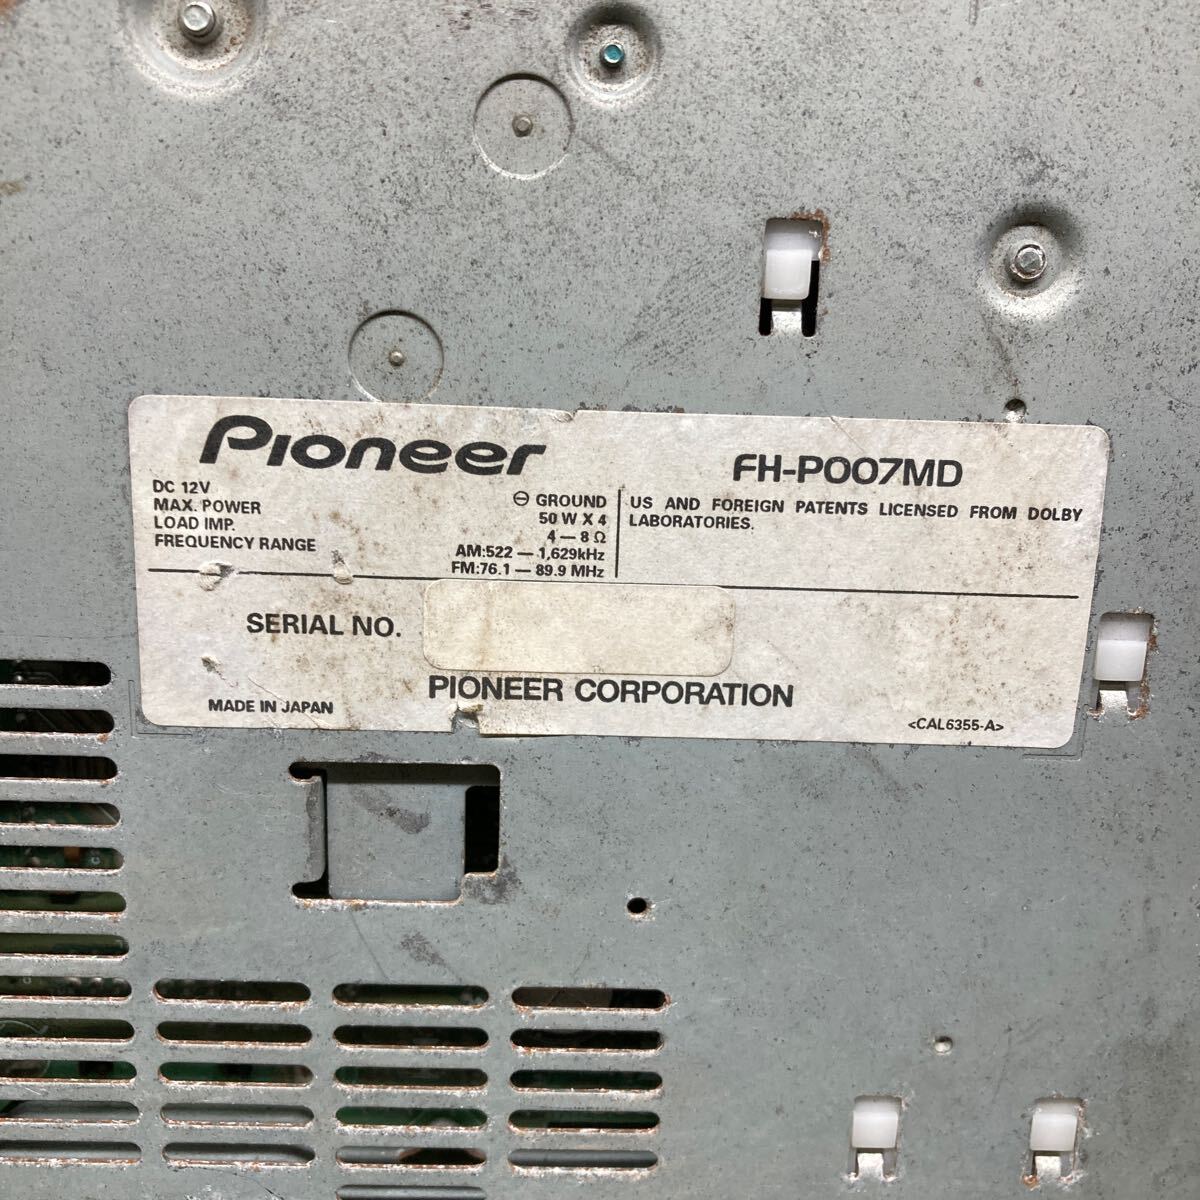 AV3-573 супер-скидка машина стерео CARROZZERIA PIONEER FH-P007MD CD FM корпус только простой рабочее состояние подтверждено б/у текущее состояние товар 